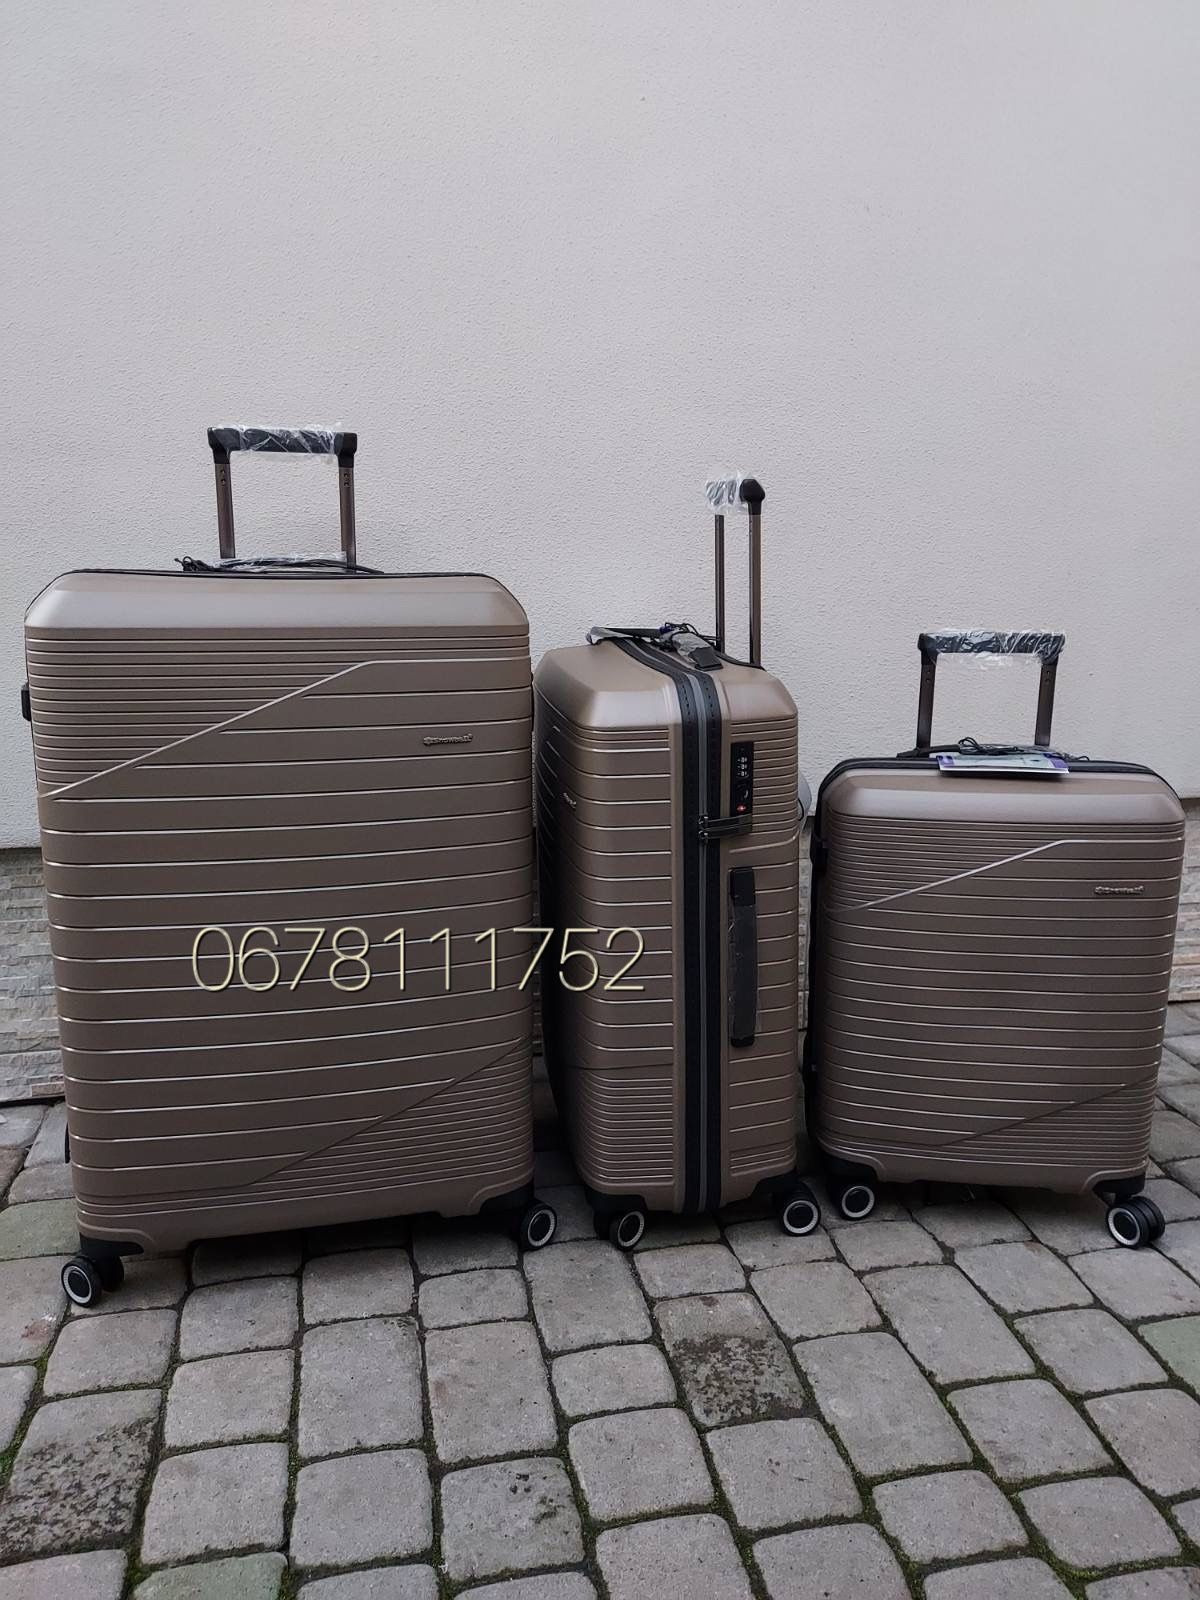 Надлегкі SNOWBALL 24103 Франція валізи чемоданы сумки на колесах